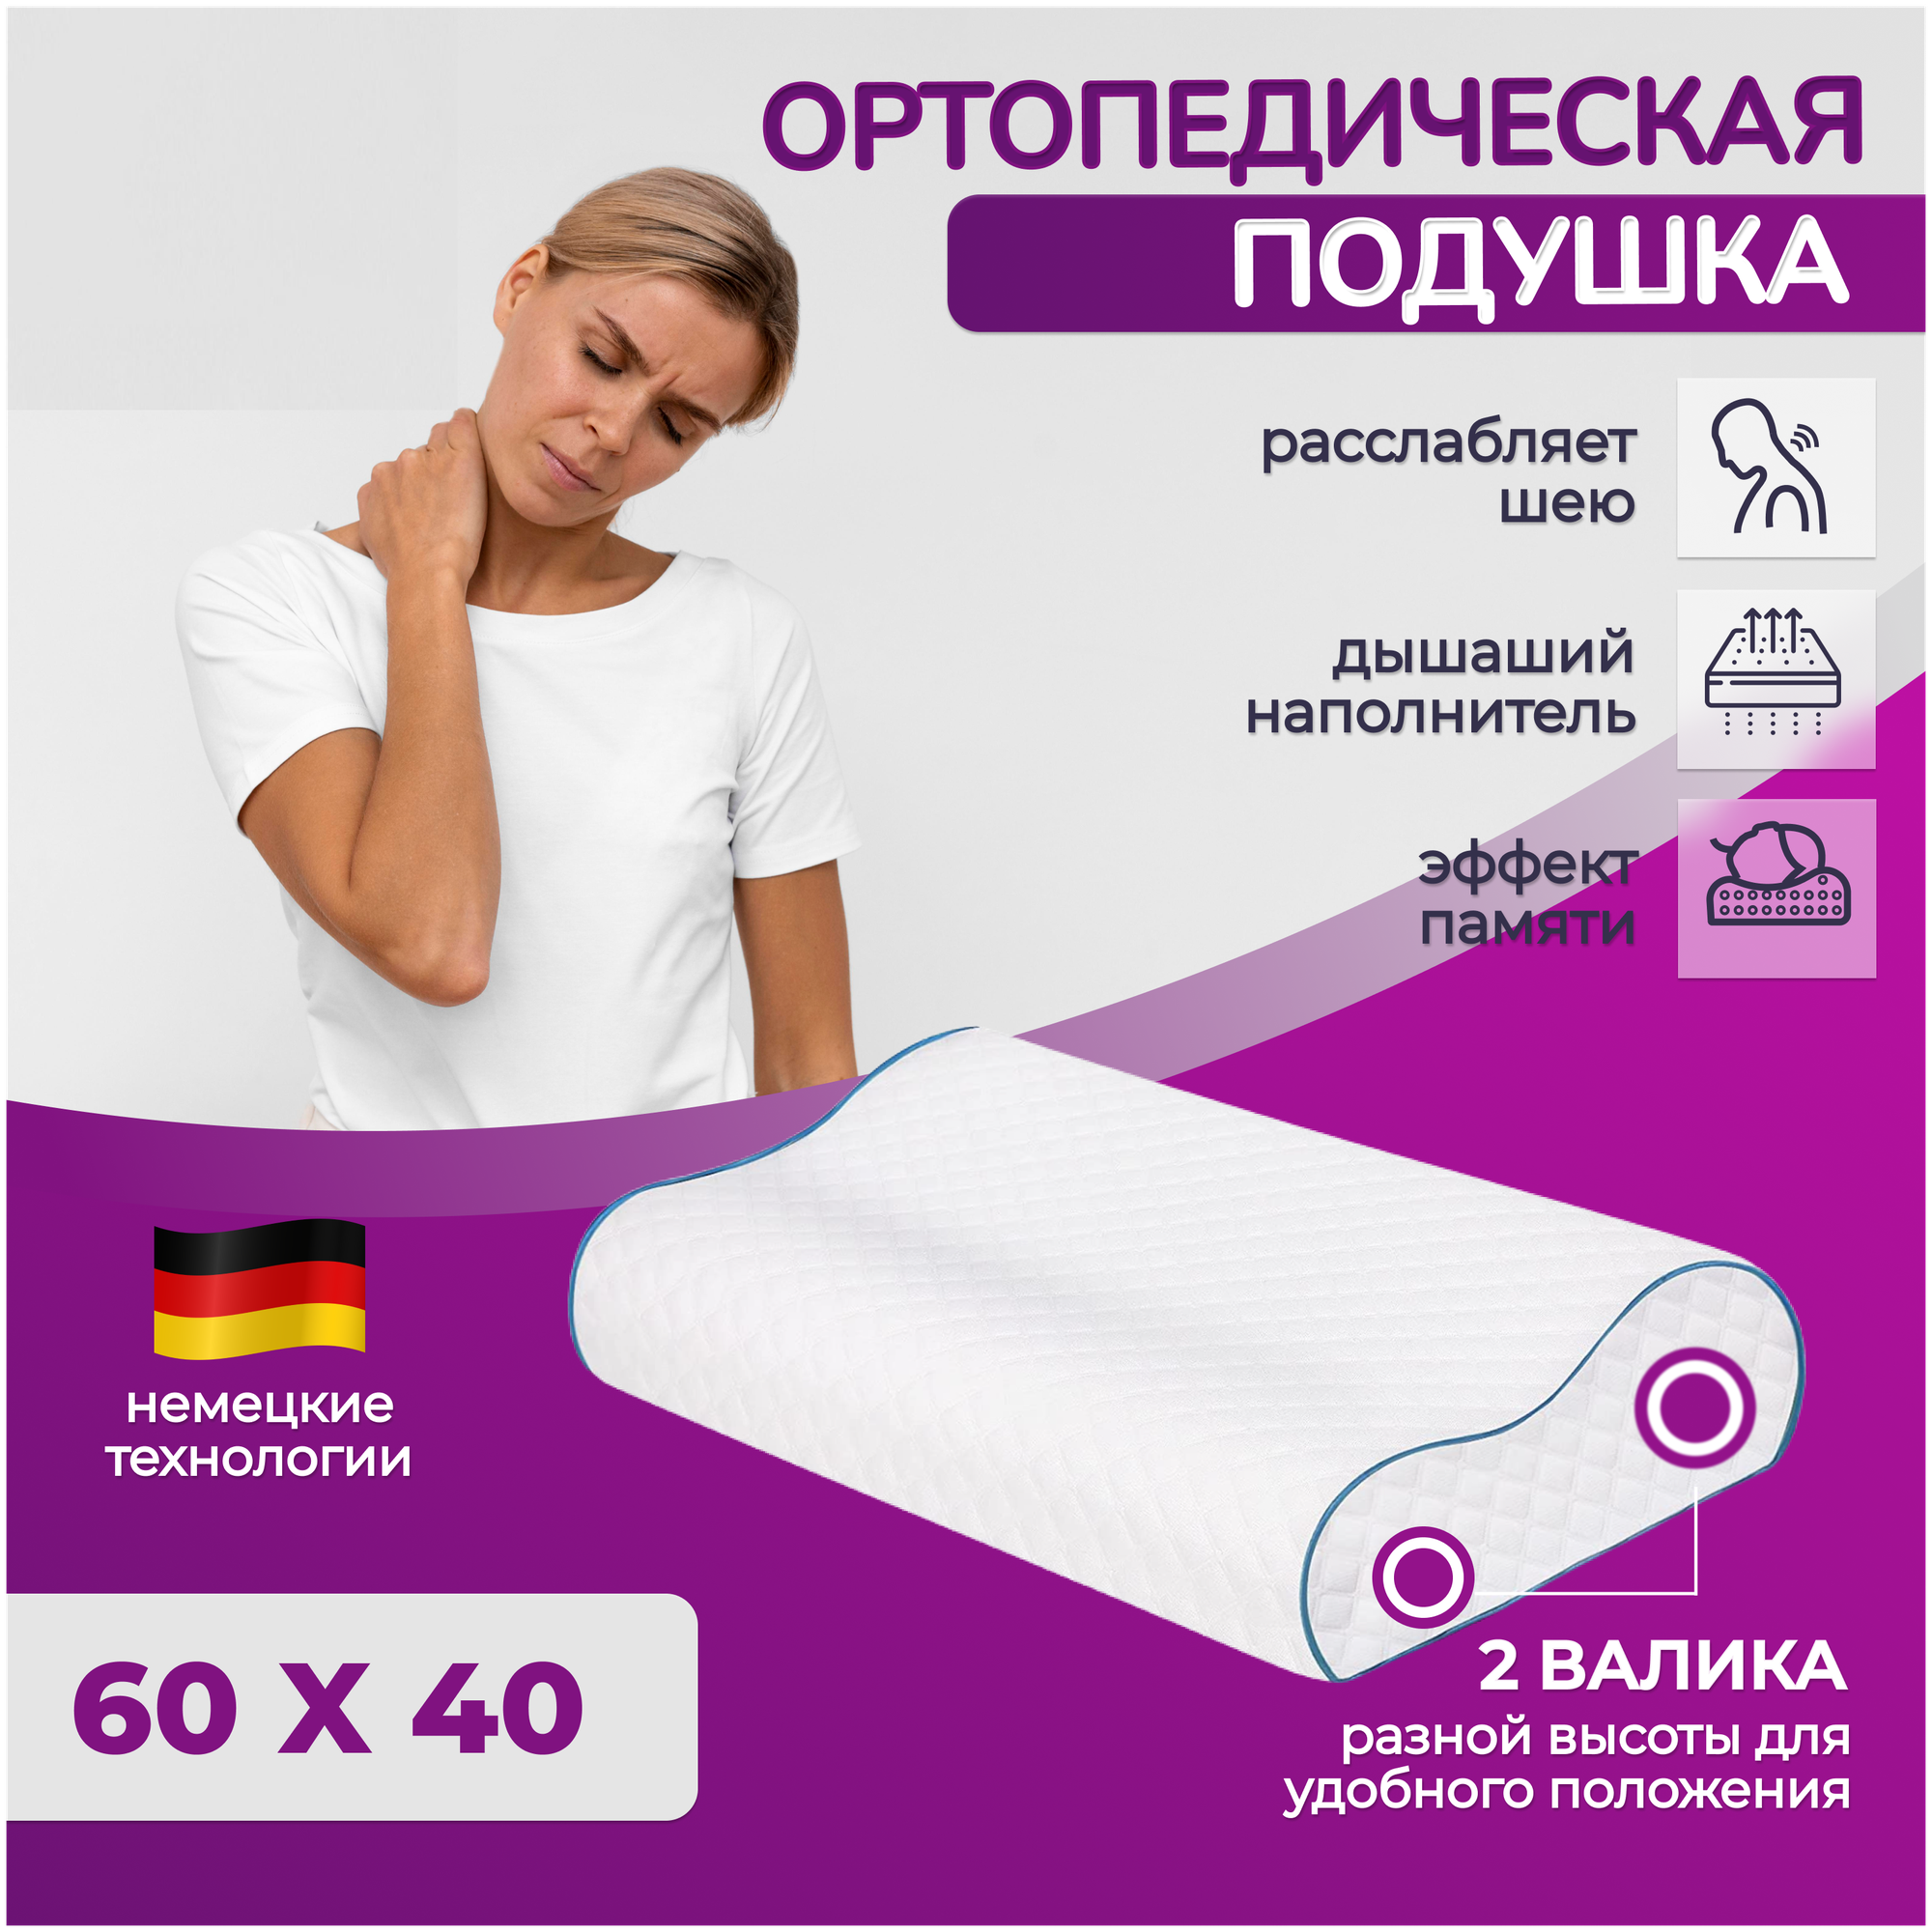 Подушка ортопедическая 60х40 для сна и шеи с эффектом памяти два валика 13 и 11 см + чехол на подушку - фотография № 1